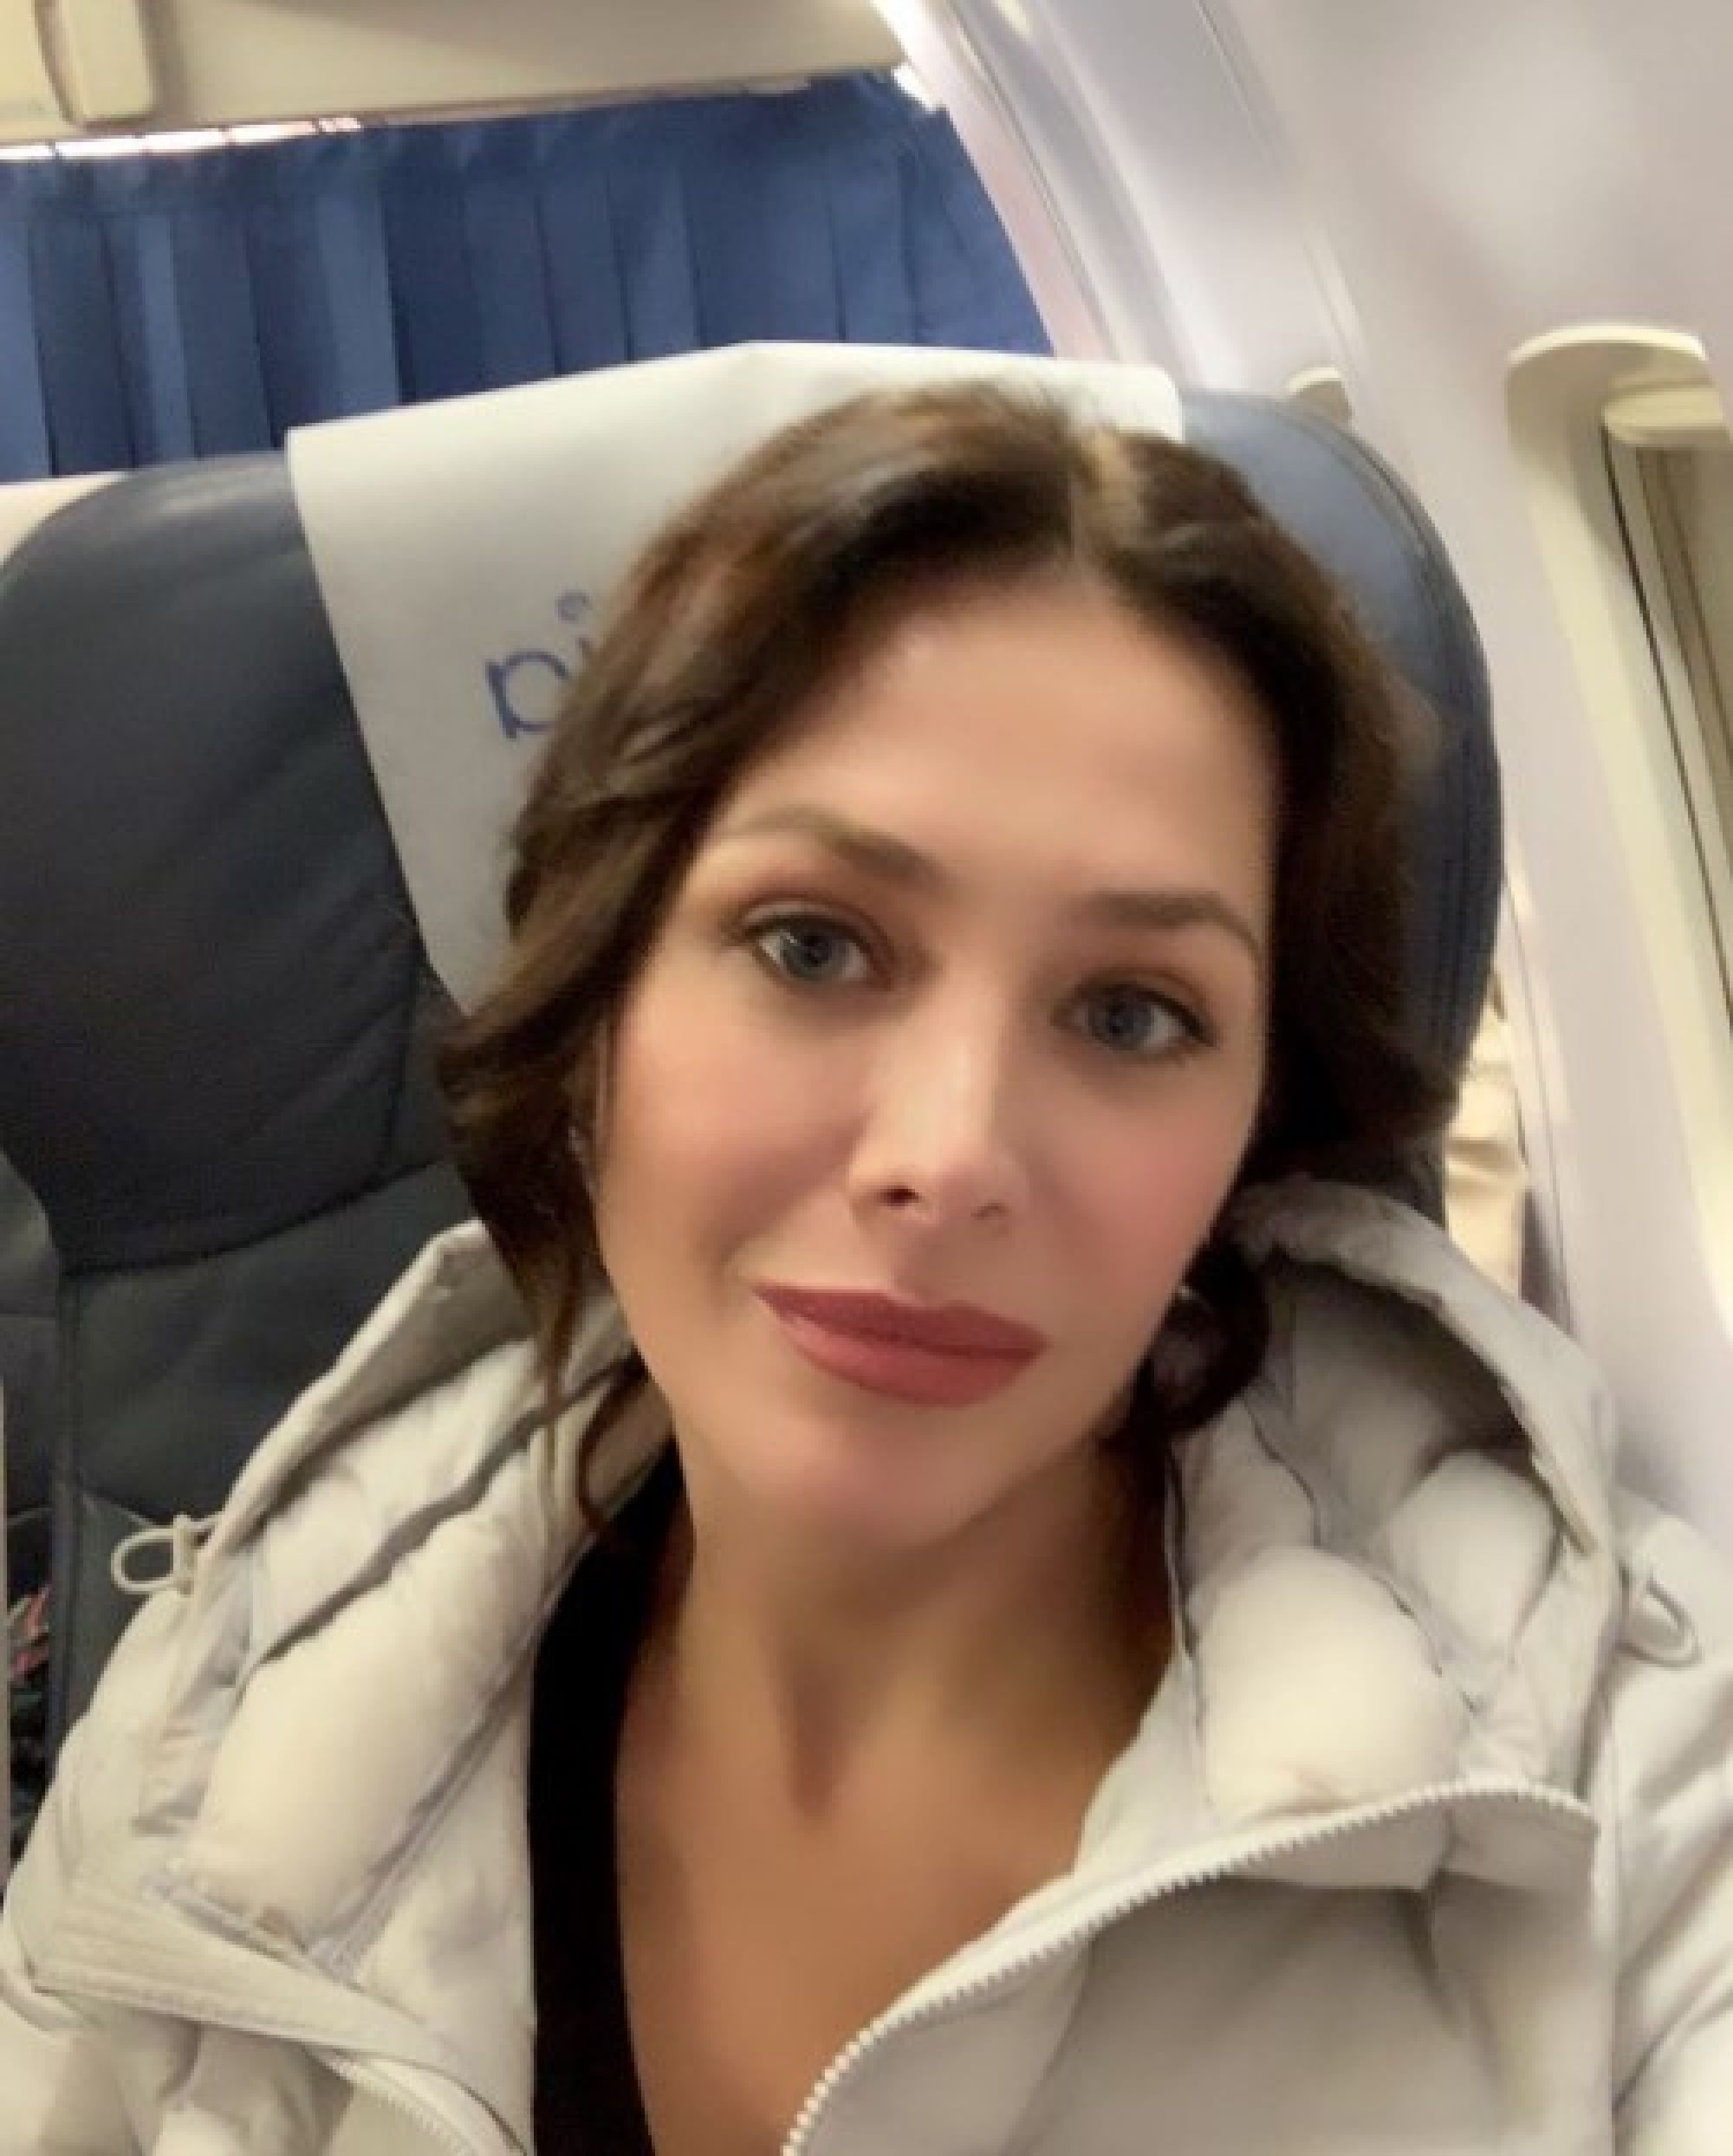 "Сглазили меня - красивая, красивая": Екатерина Волкова боится показывать лицо после травмы в аэропорту